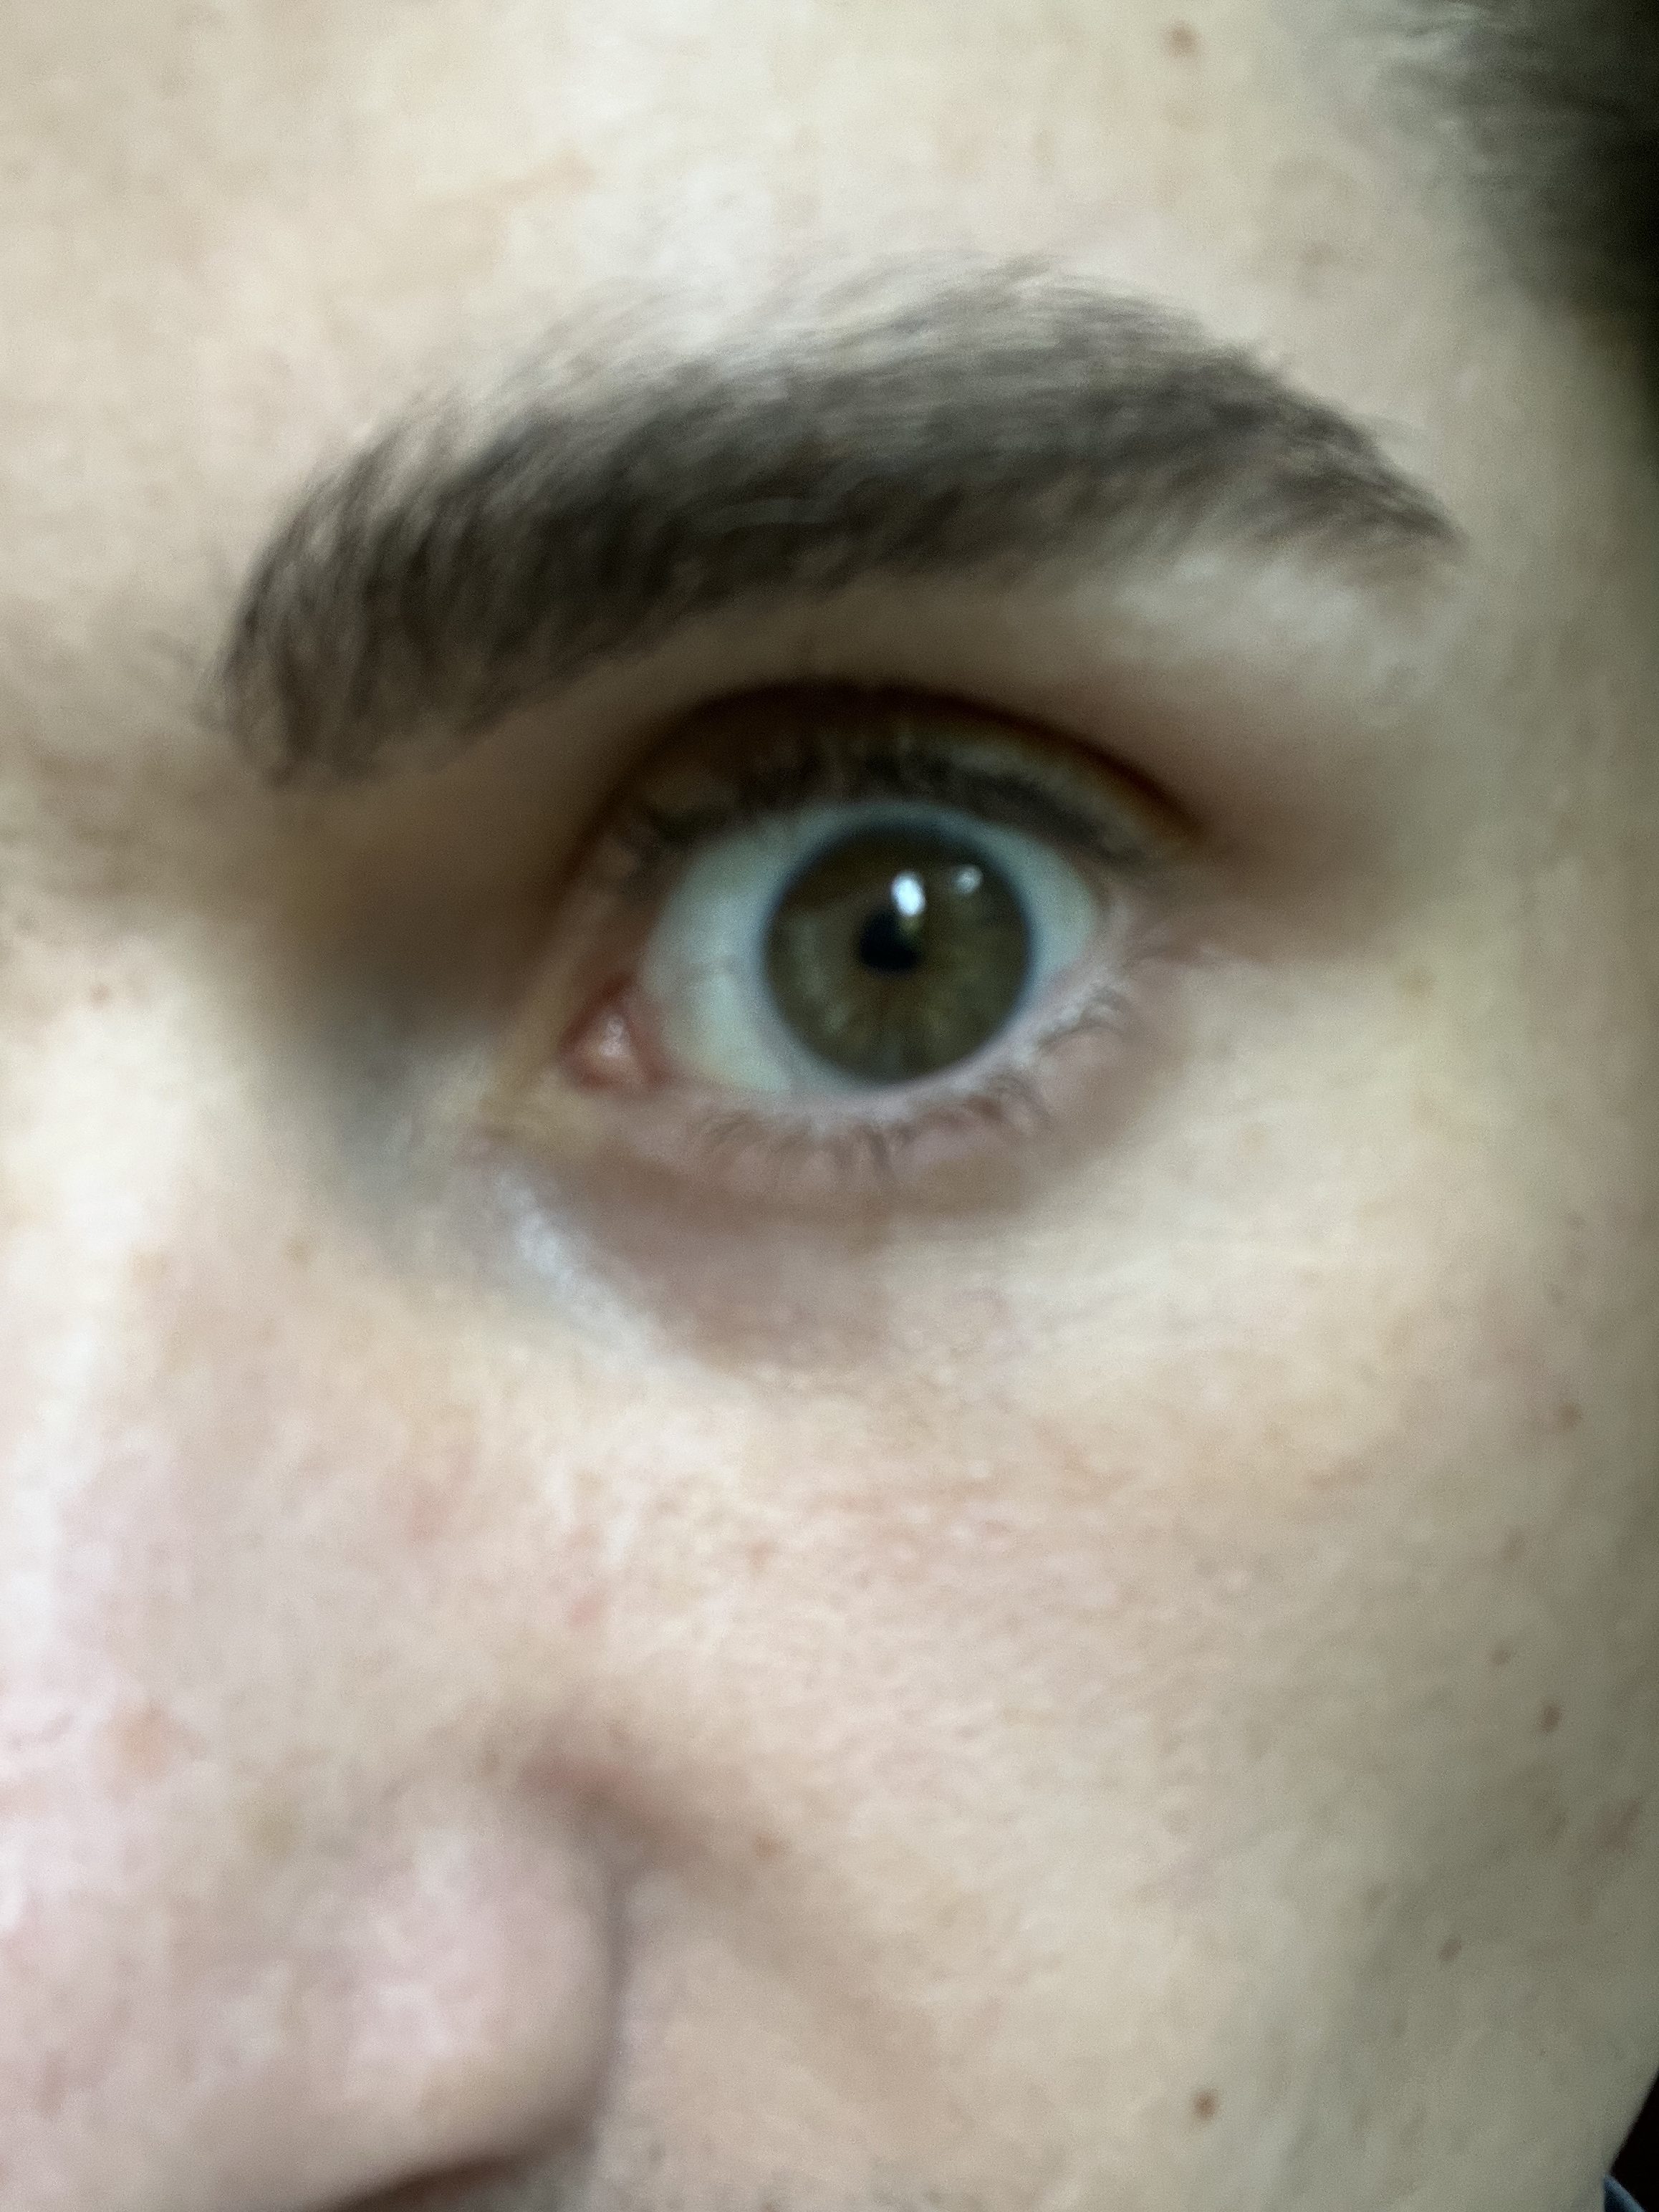 Uma selfie de close-up do olho de alguém.